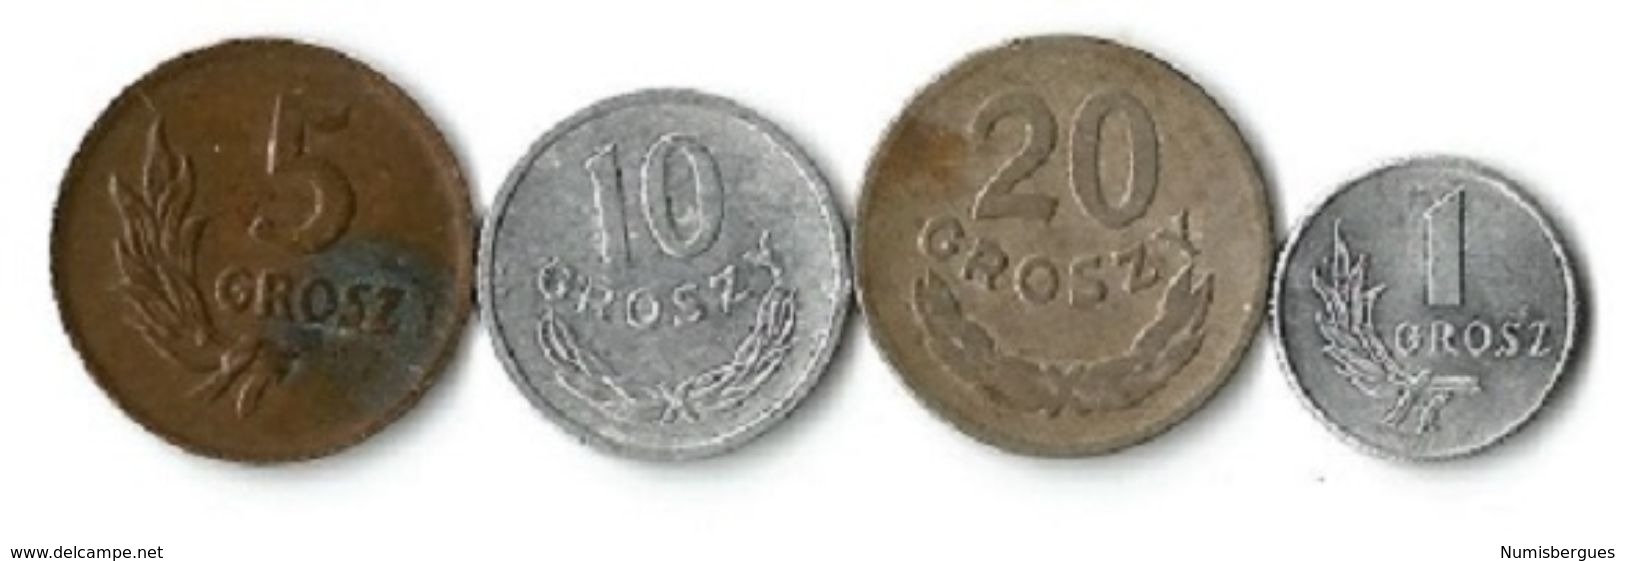 Lot 4 Pièces De Monnaie  1 - 5 - 10 Et  20 Grosz - Pologne